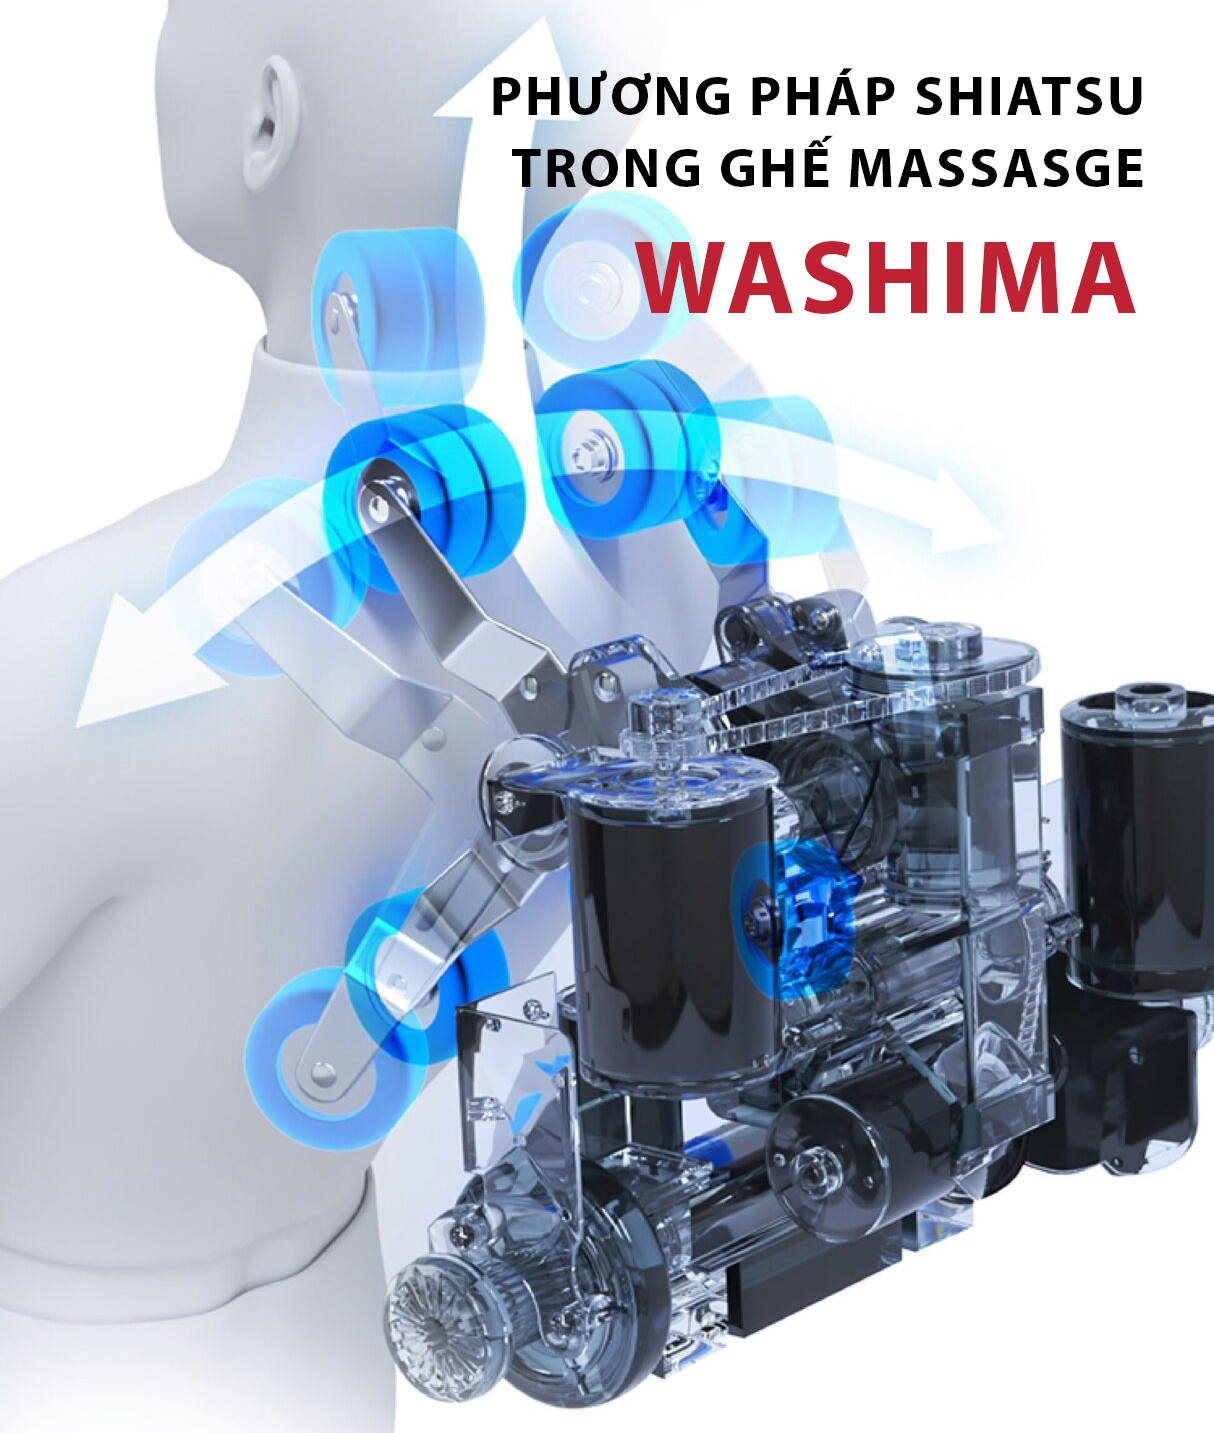 phương pháp shiatsu trong ghế massage wasshima